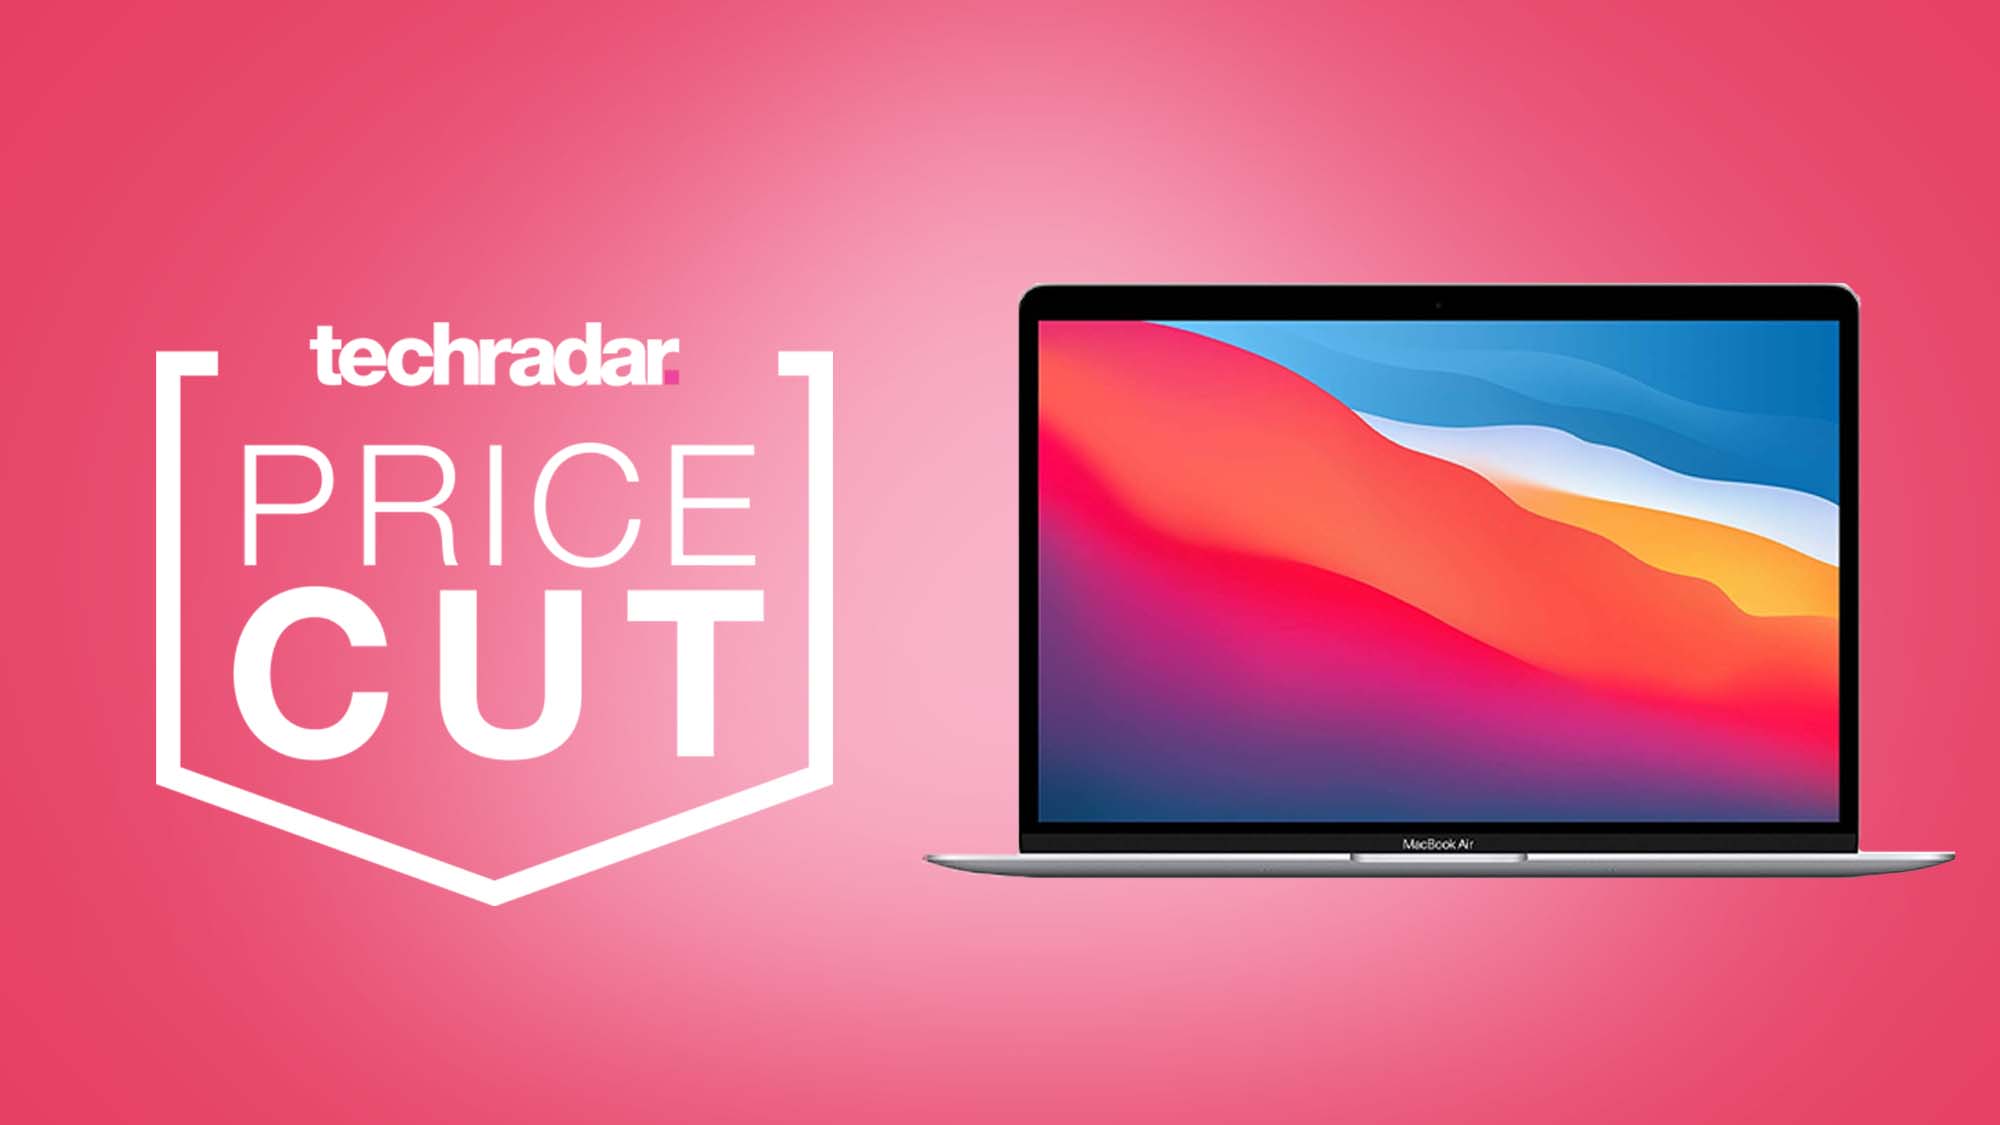 MacBook Air sobre un fondo rosa con la insignia de TechRadar Price Cut